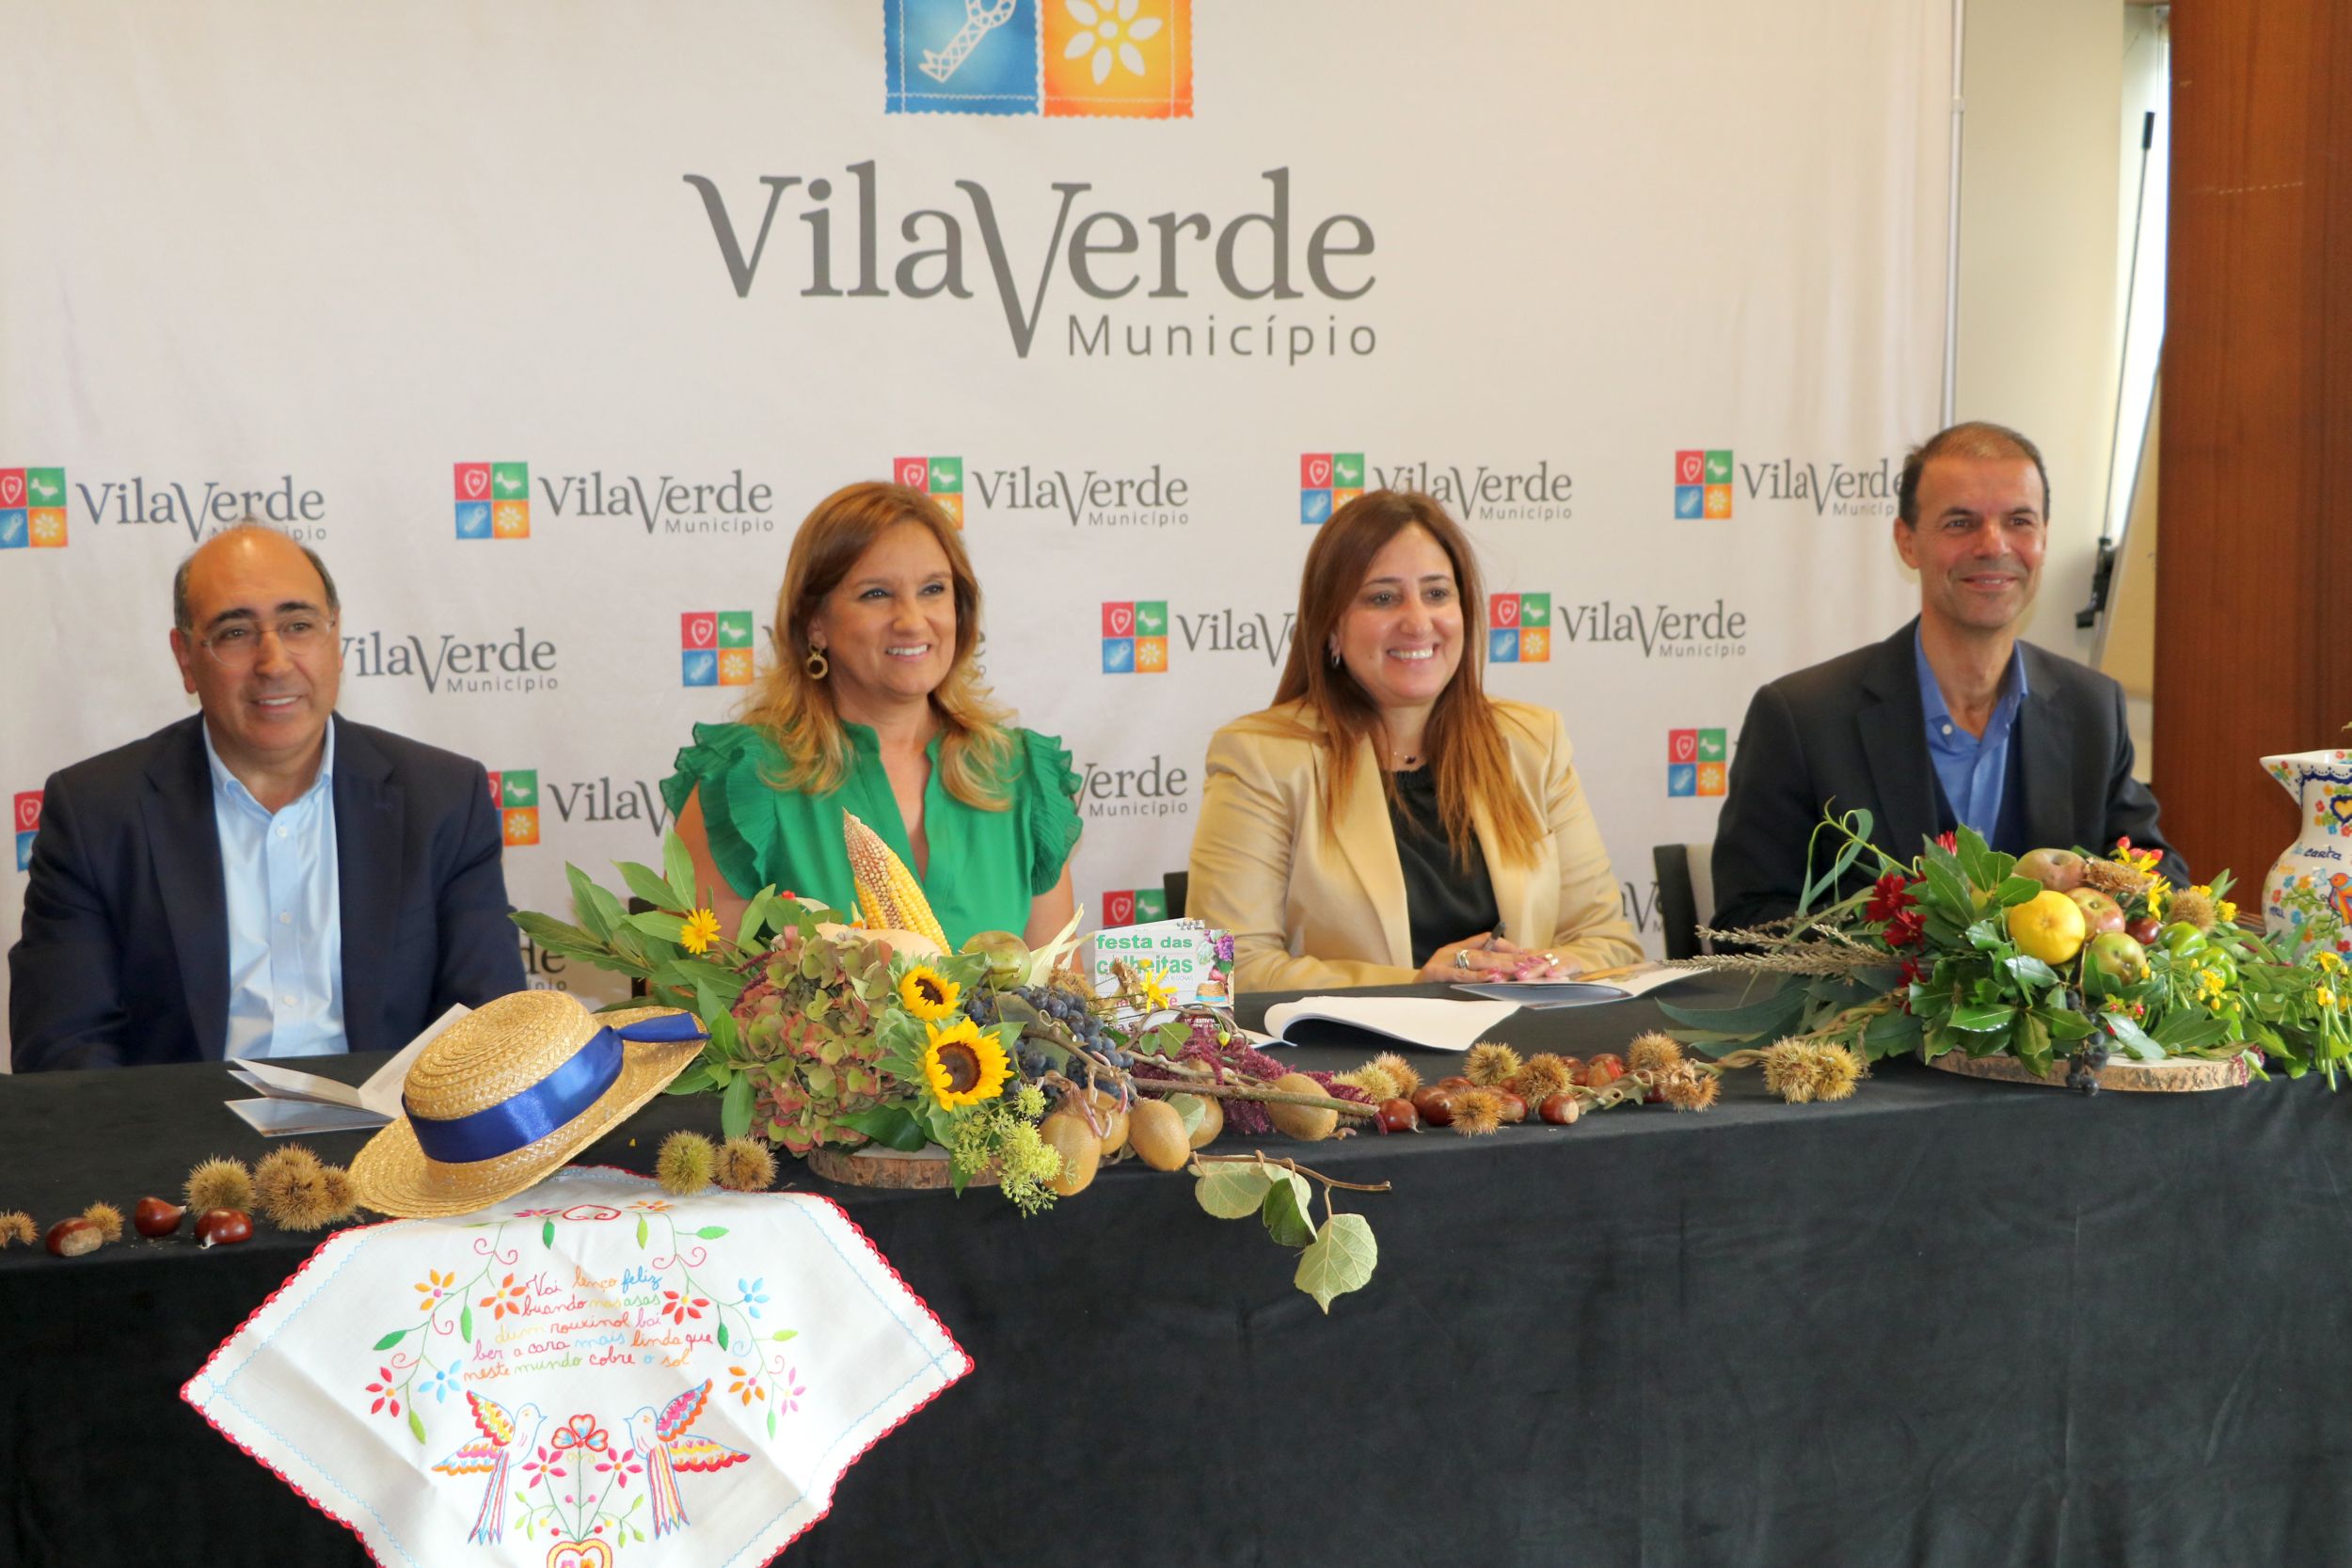 Festa das Colheitas de Vila Verde: “um verdeiro hino ao mundo rural”